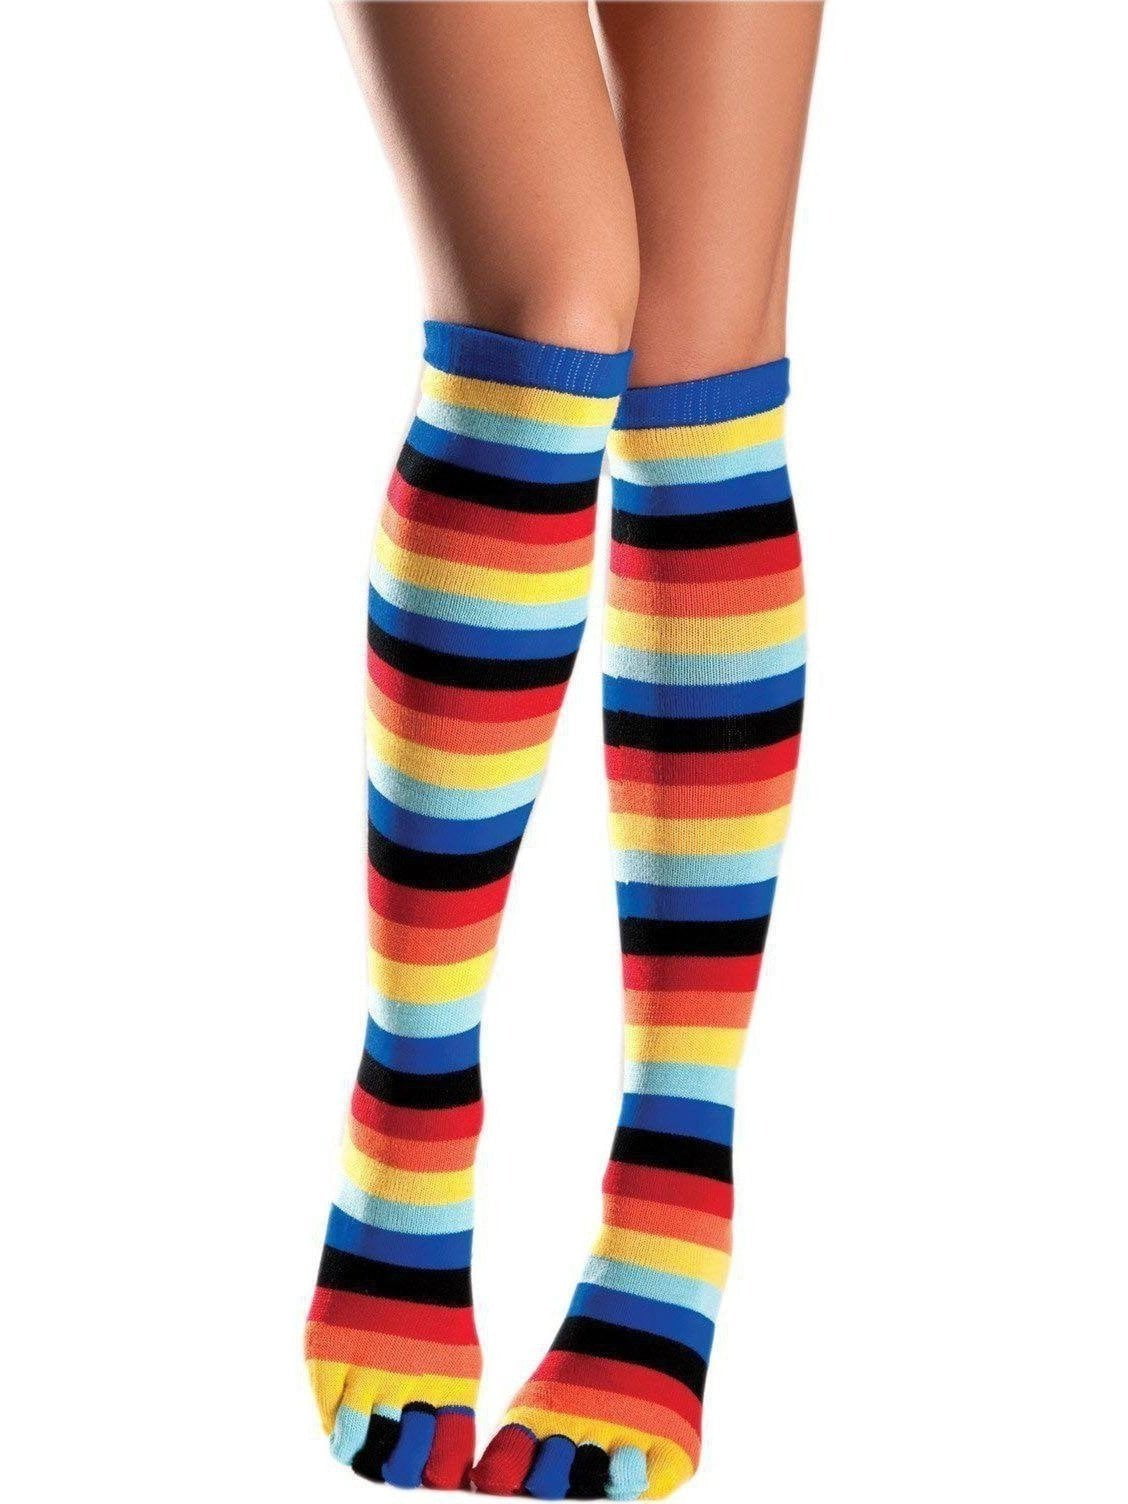 Rainbow Knee High Socks - Walmart.com